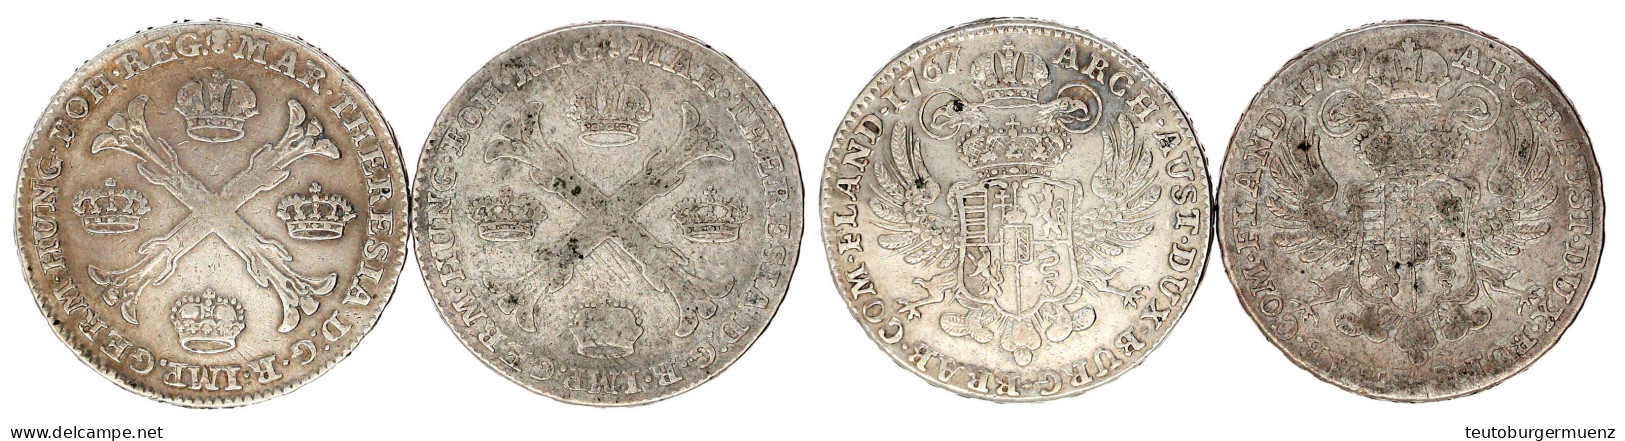 2 X Kronentaler: 1767 Und 1769, Brüssel. Sehr Schön Und Fast Sehr Schön. Davenport. 1282. - Goldmünzen